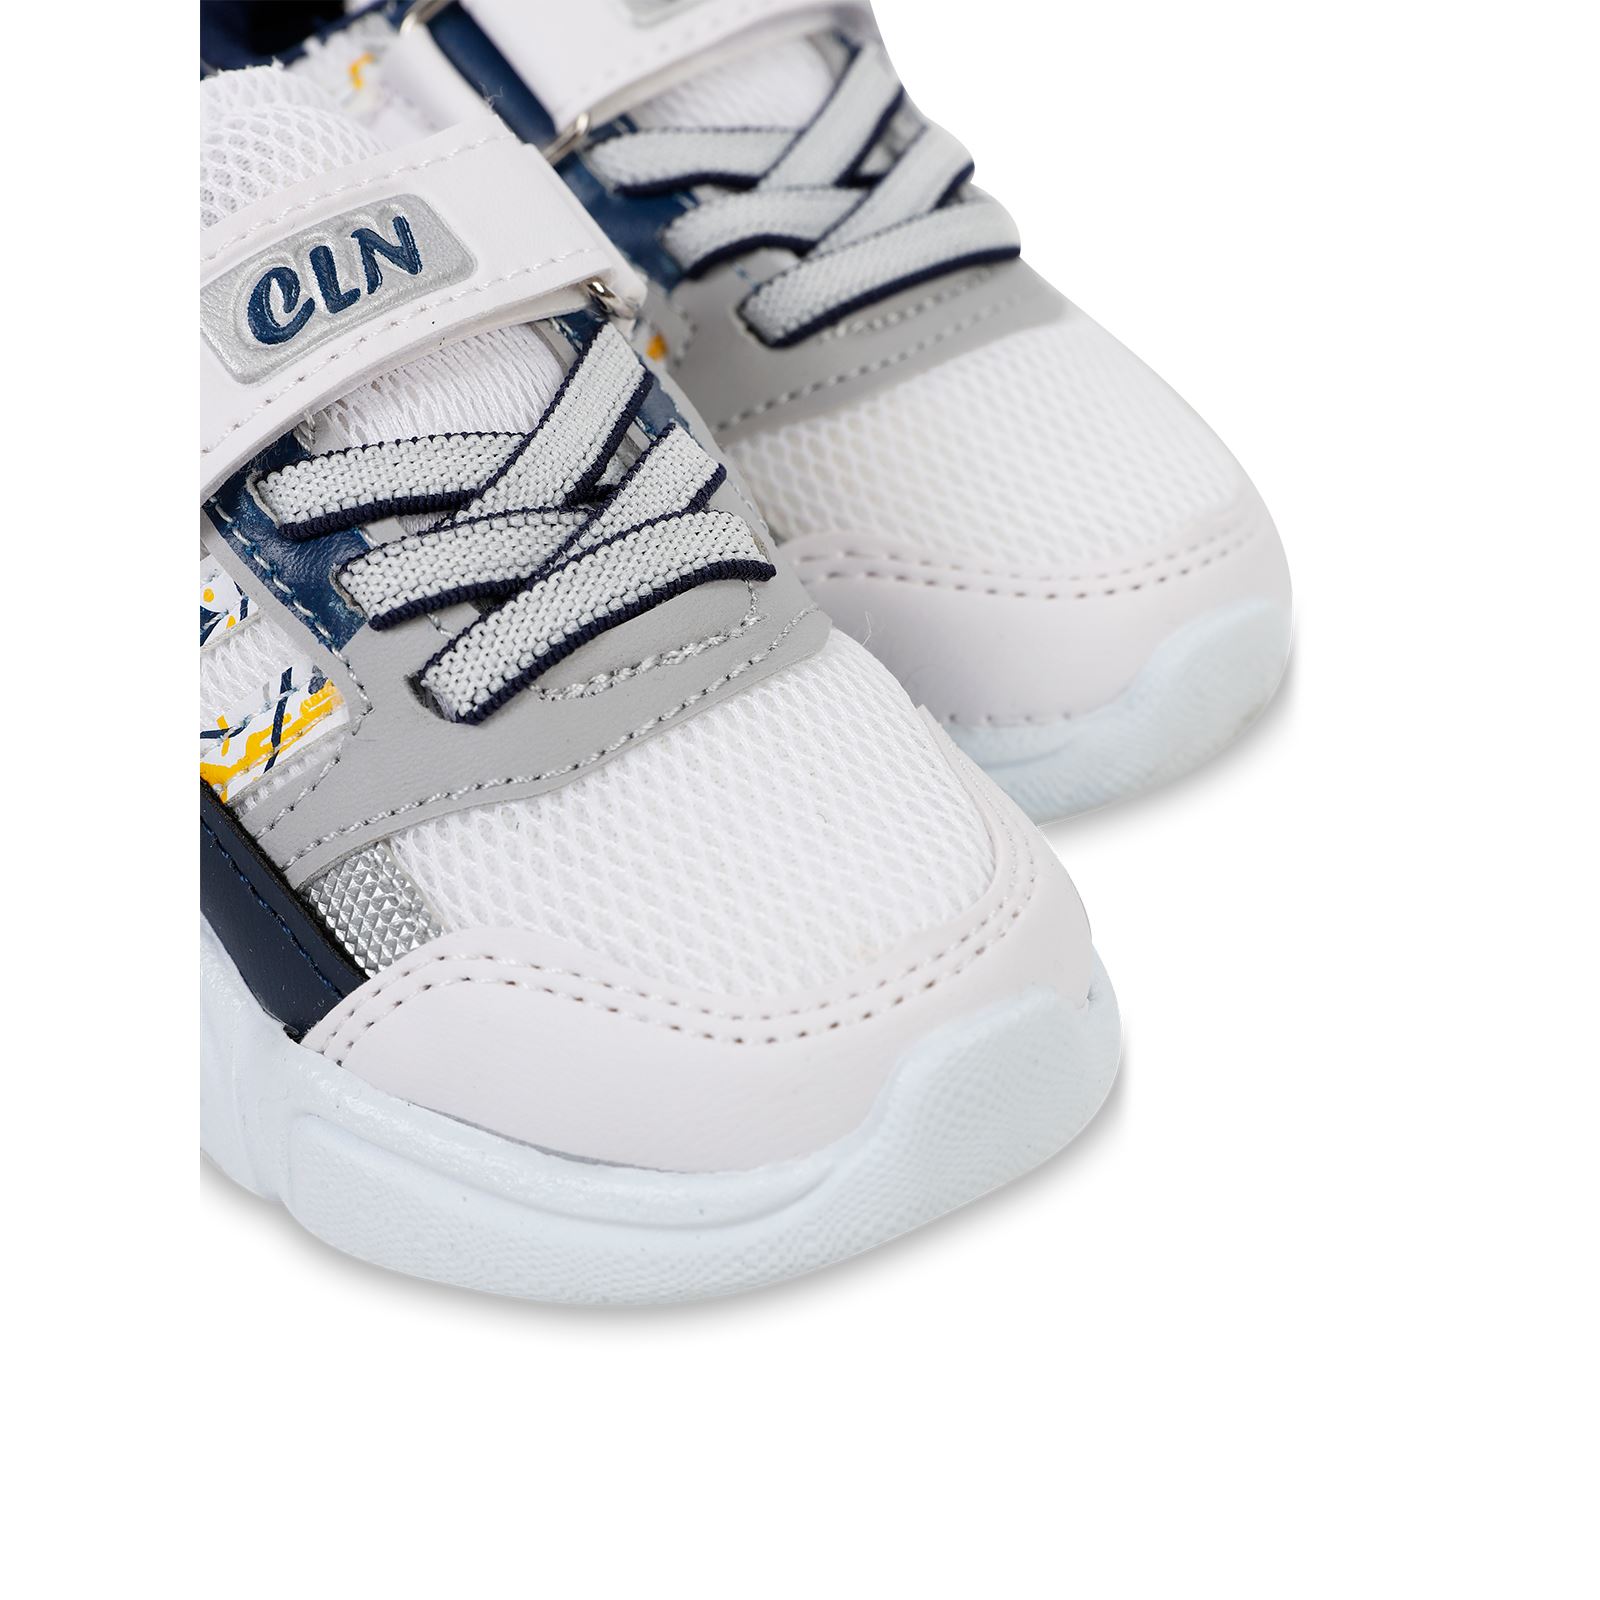 Callion Erkek Çocuk Spor Ayakkabı 22-25 Numara Beyaz-Lacivert